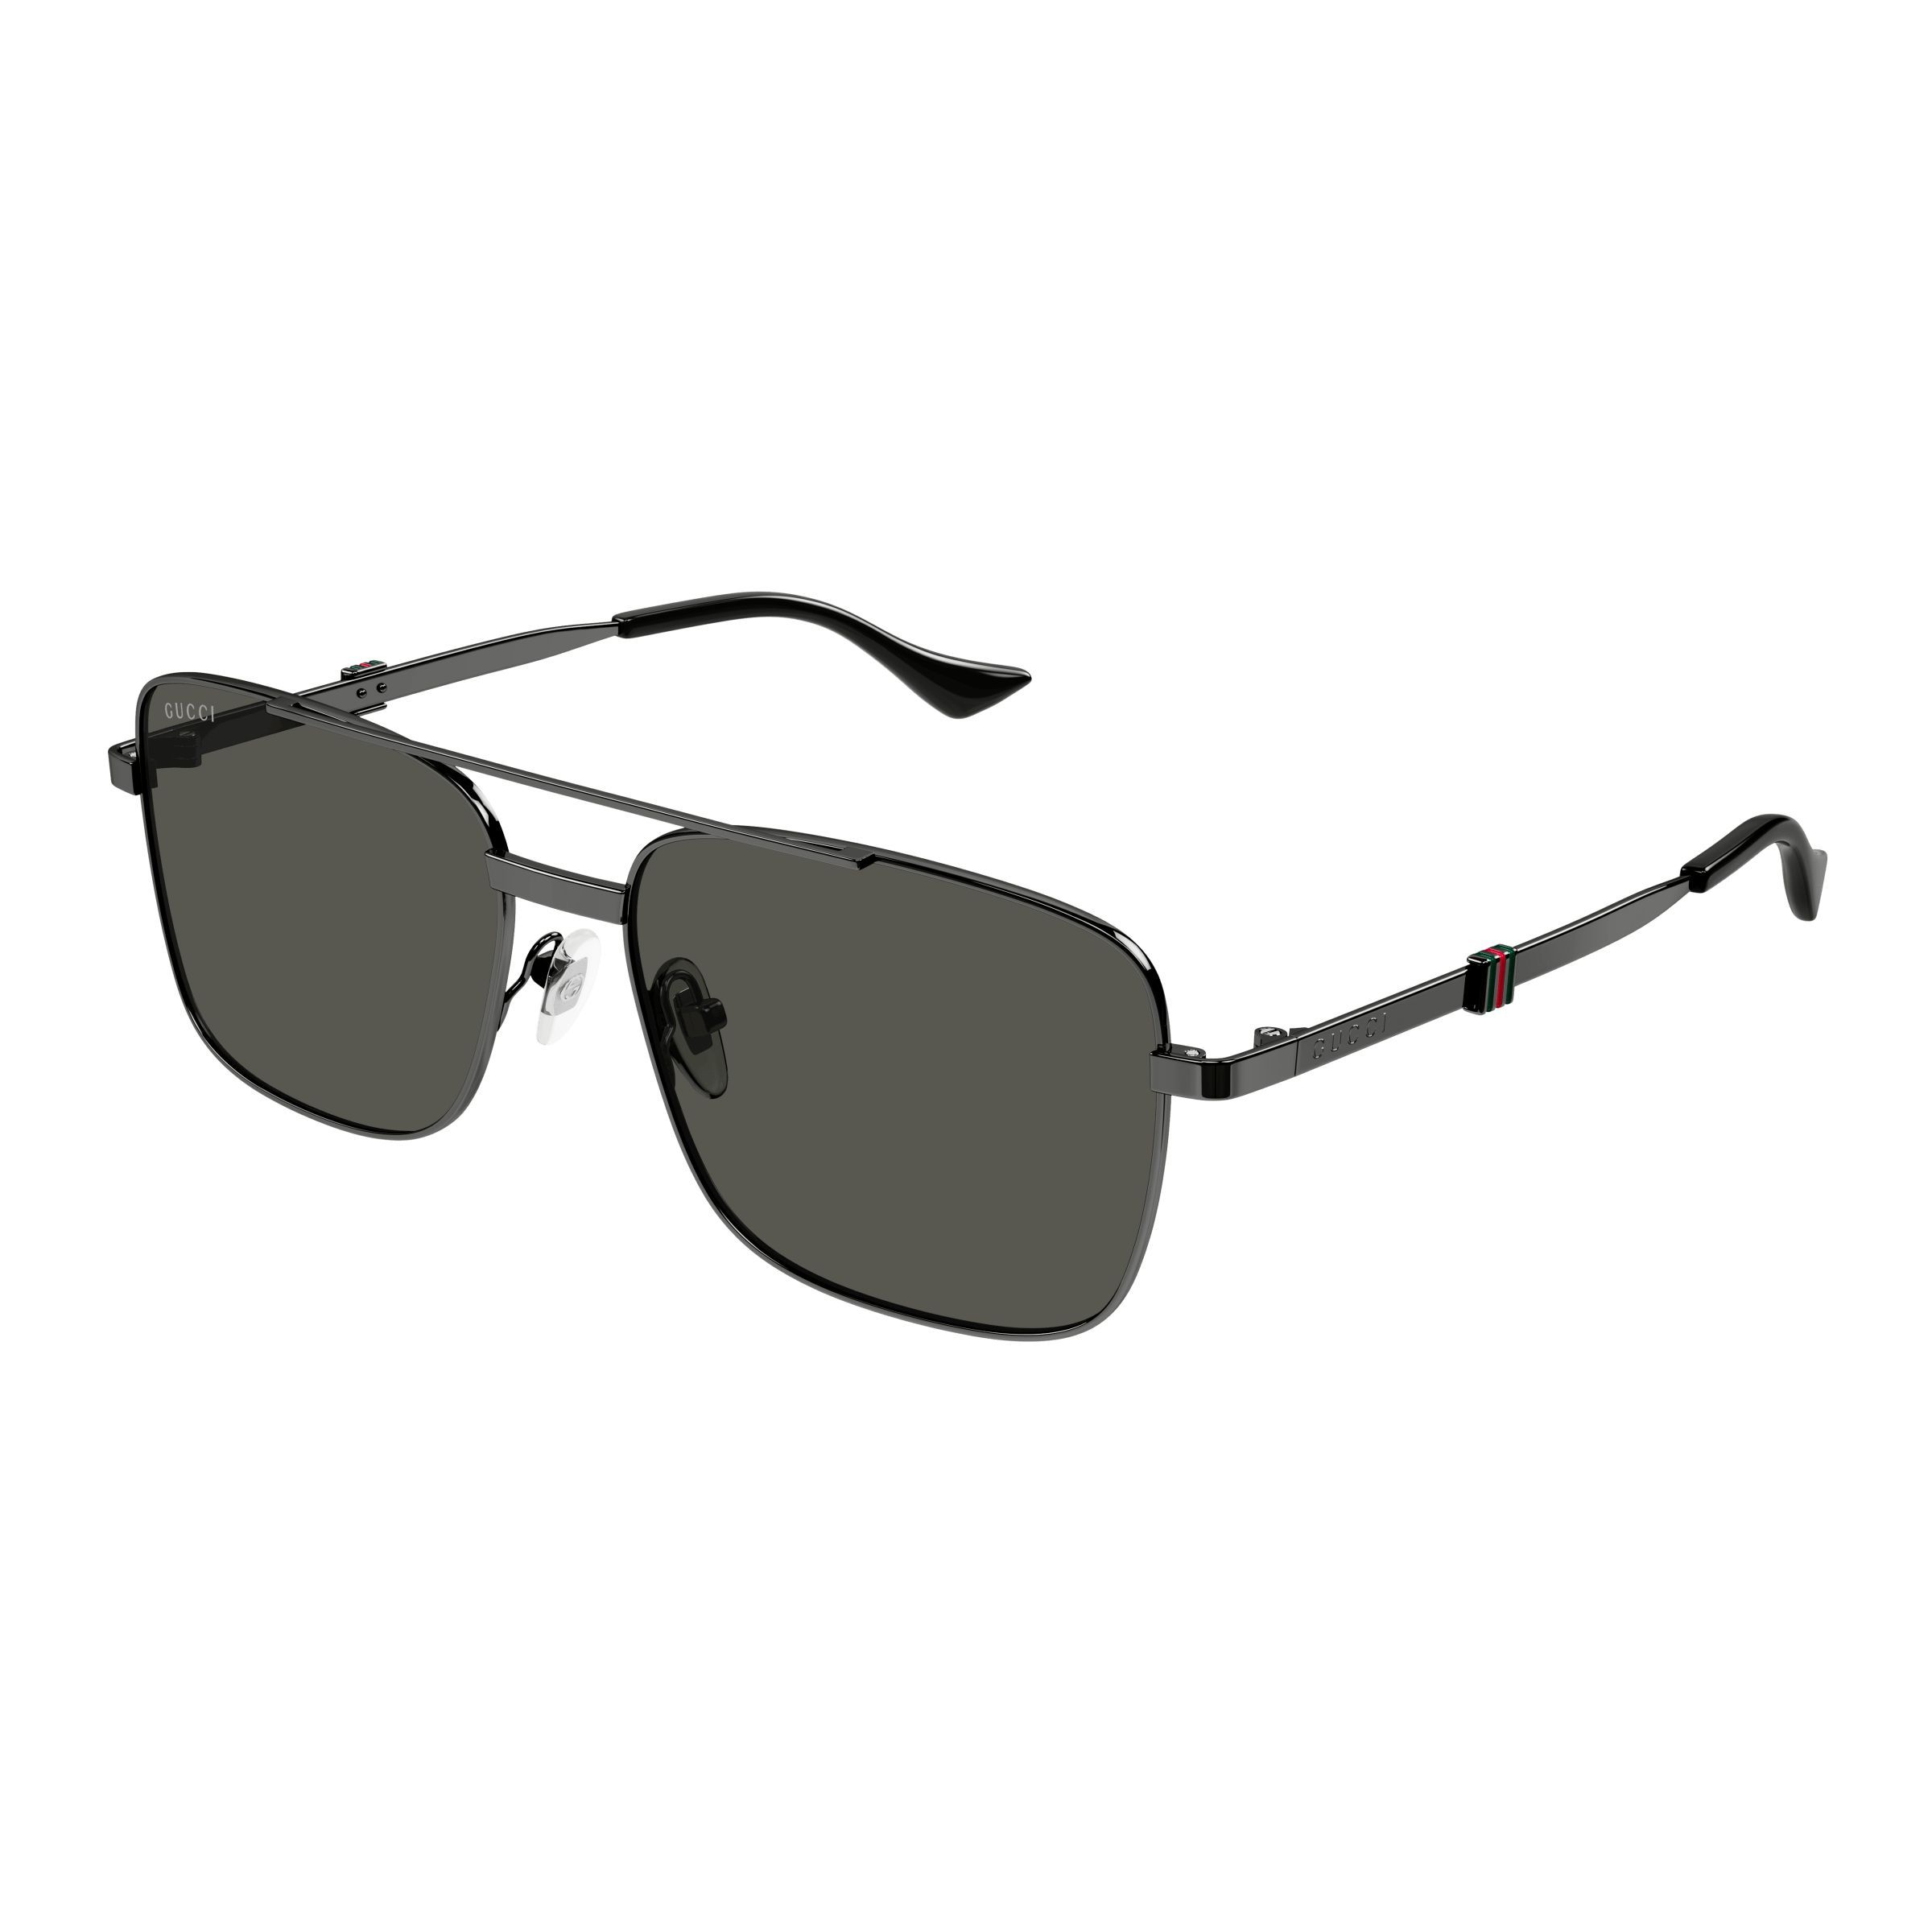 GG1441S Square Sunglasses  001 - size 58